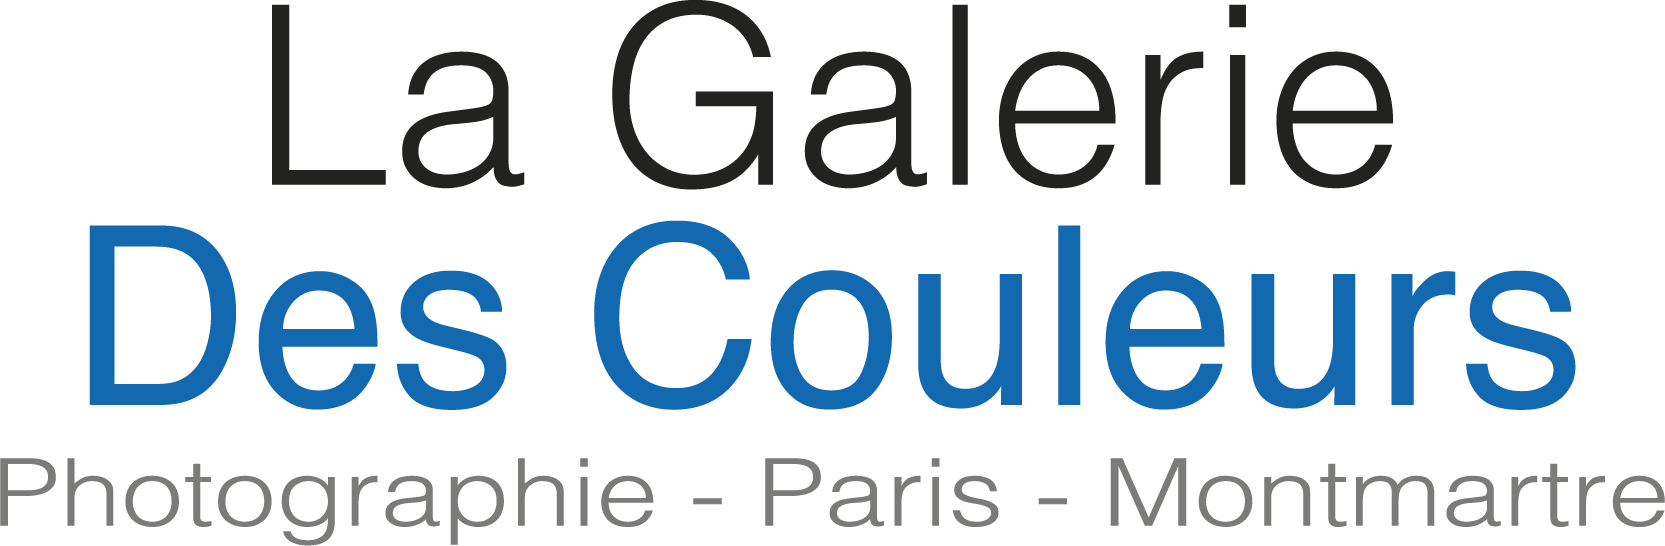 La Galerie des Couleurs | Photographies – Paris – Montmartre Logo